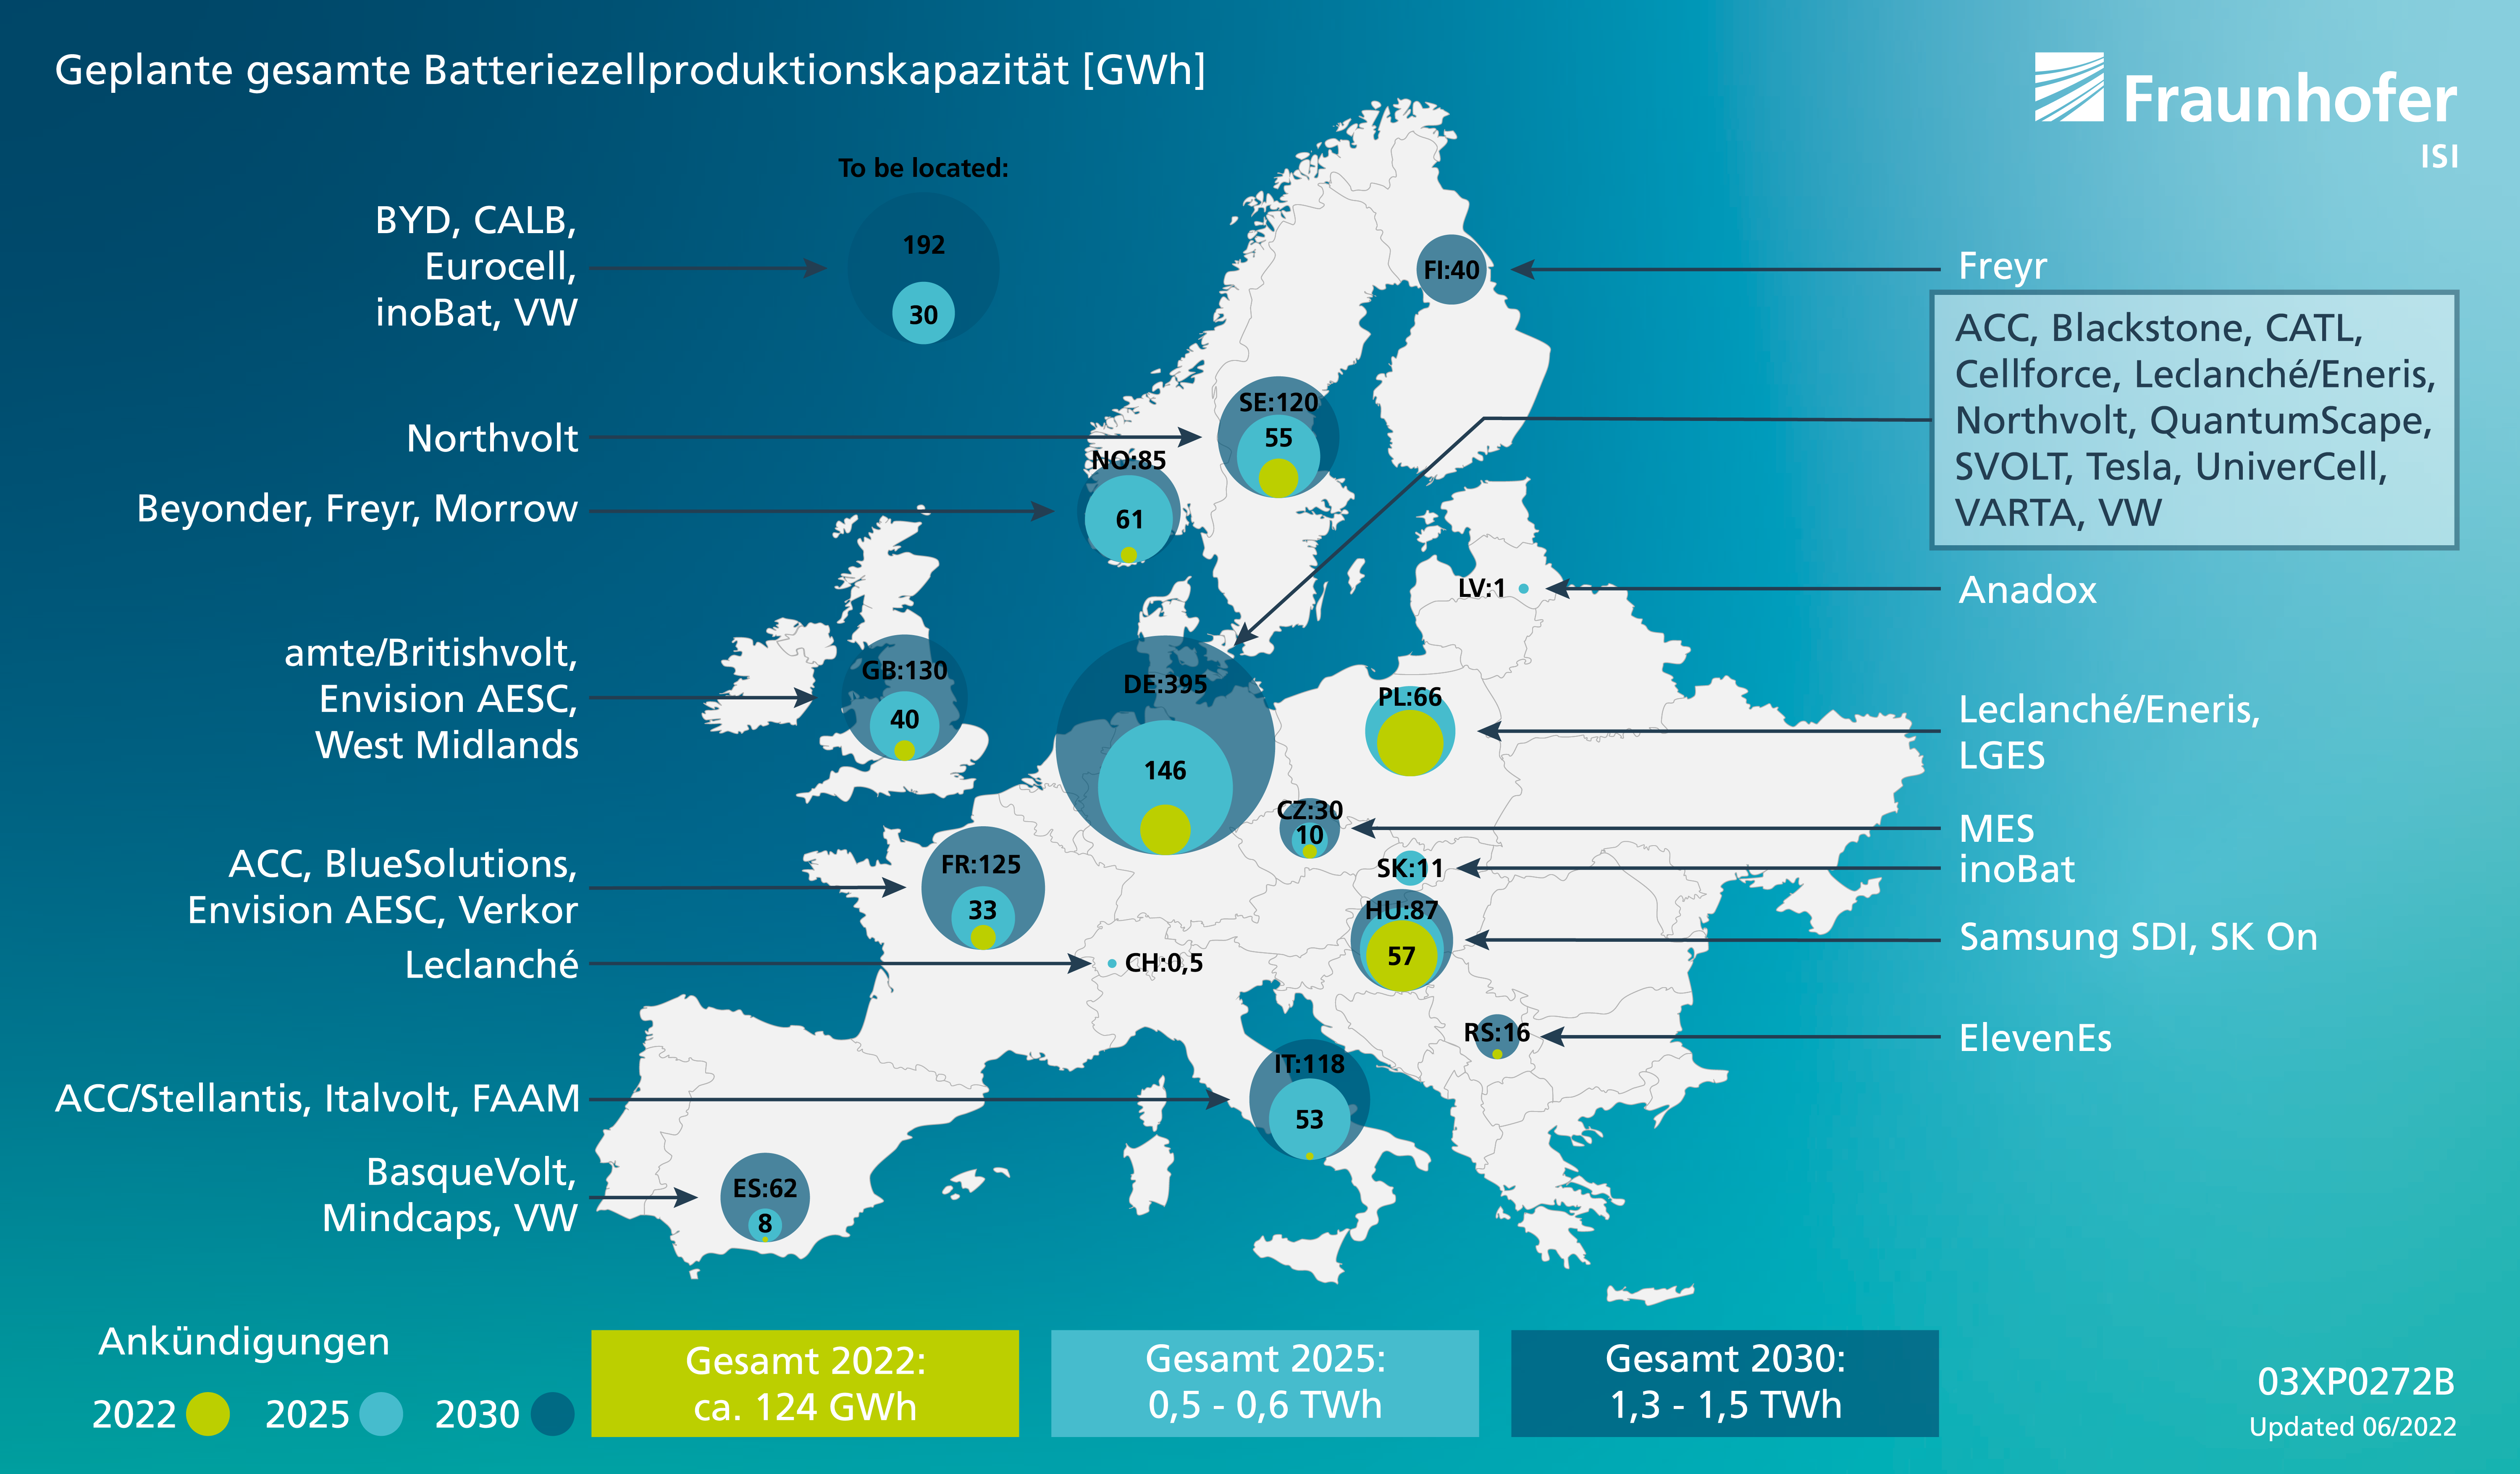 Energiespeicher Europa könnte bis 2030 das 10fache an Batteriezellen  produzieren - energiezukunft